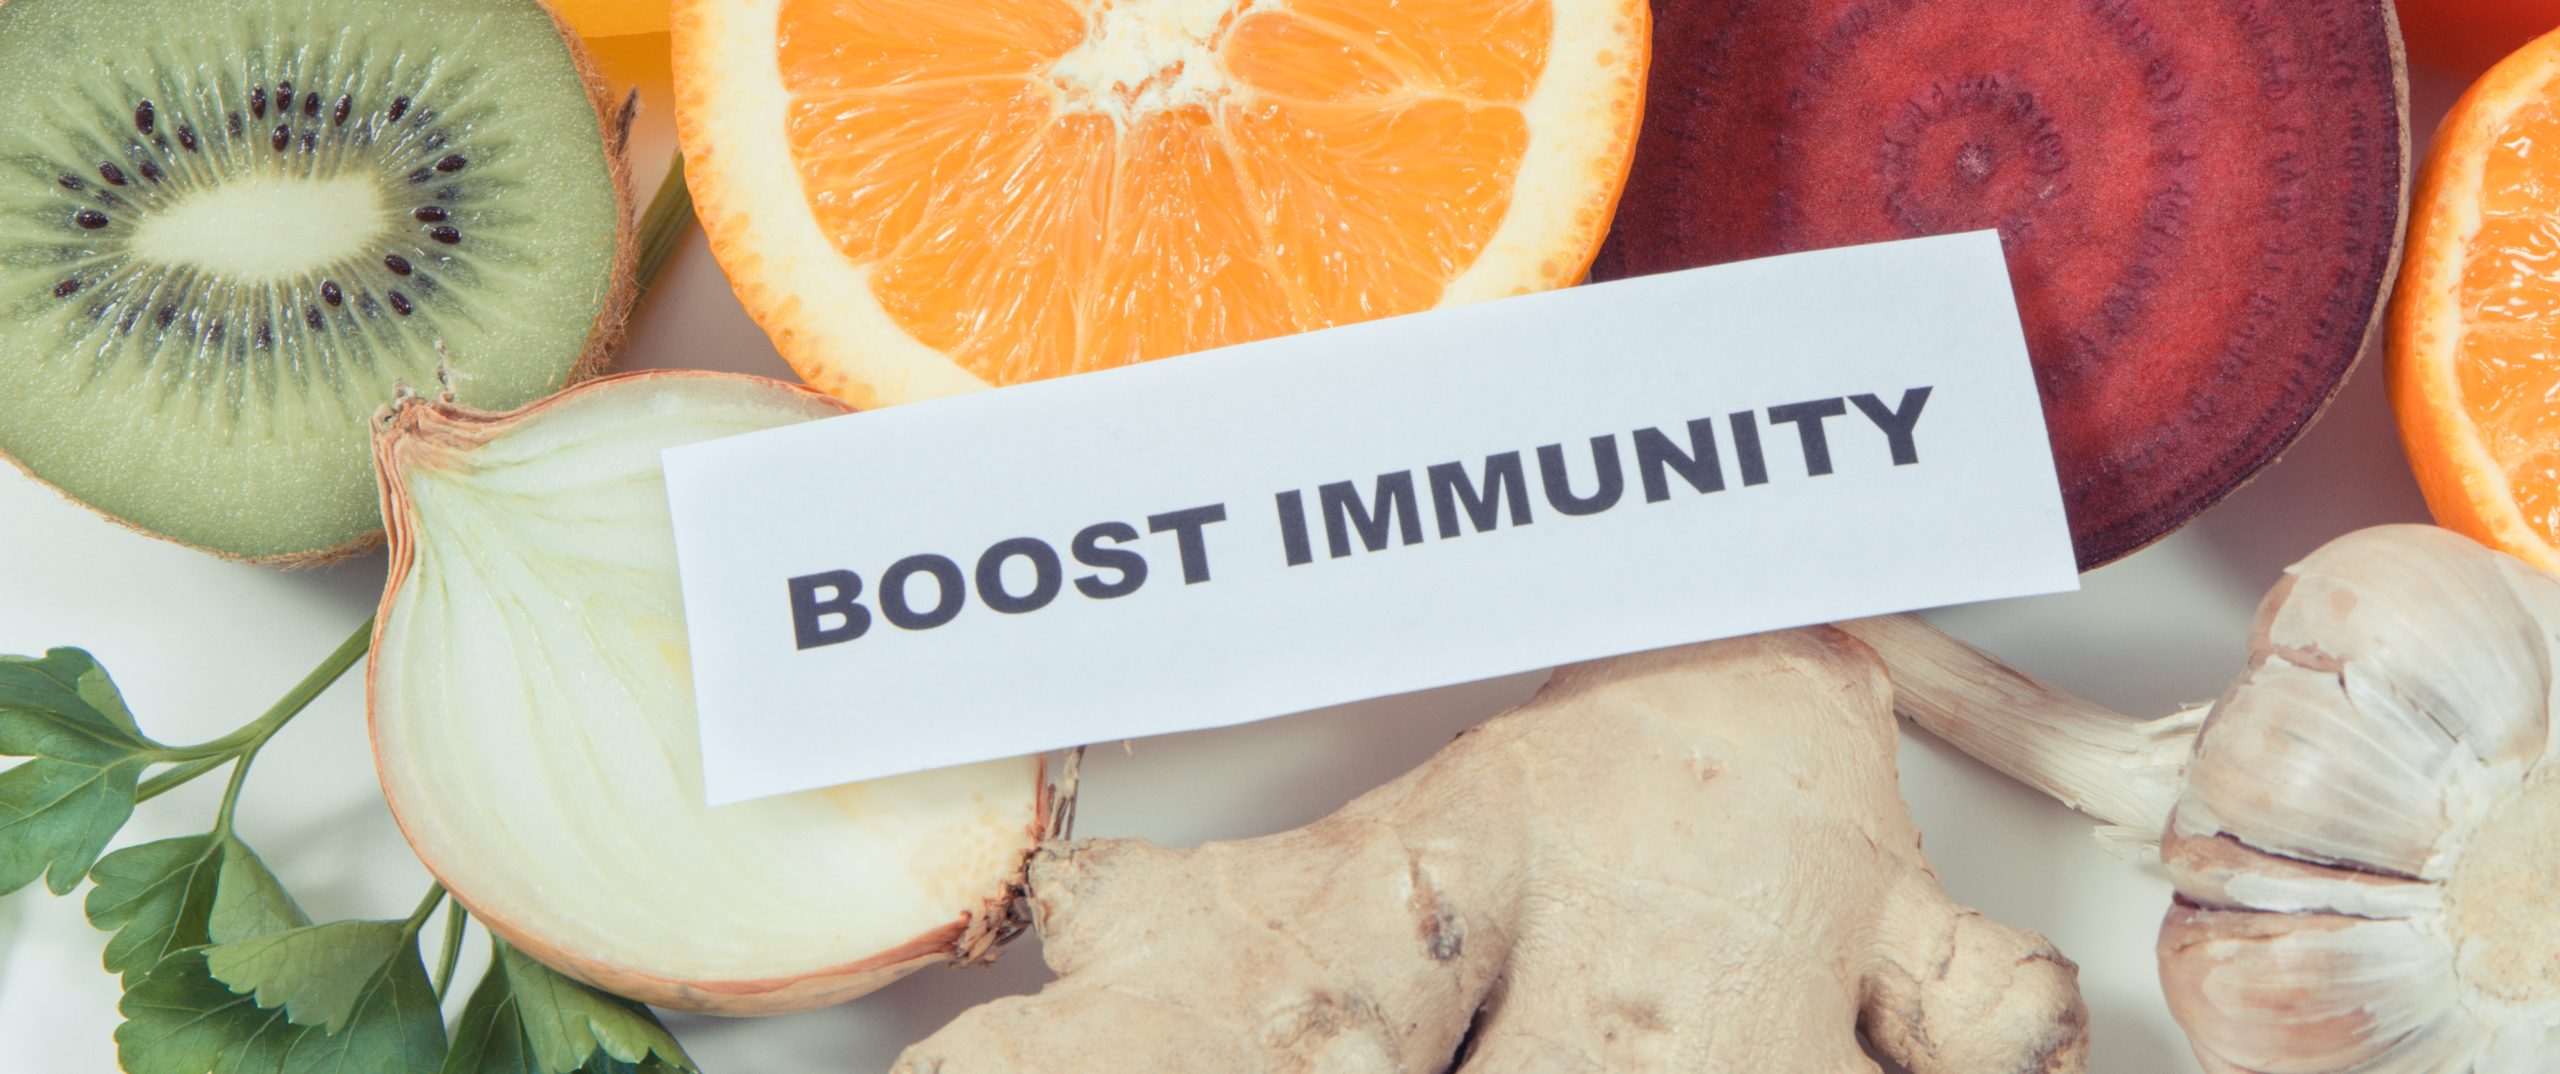 Gelbėjimosi ratas imunitetui nuo alergijų ir infekcijų